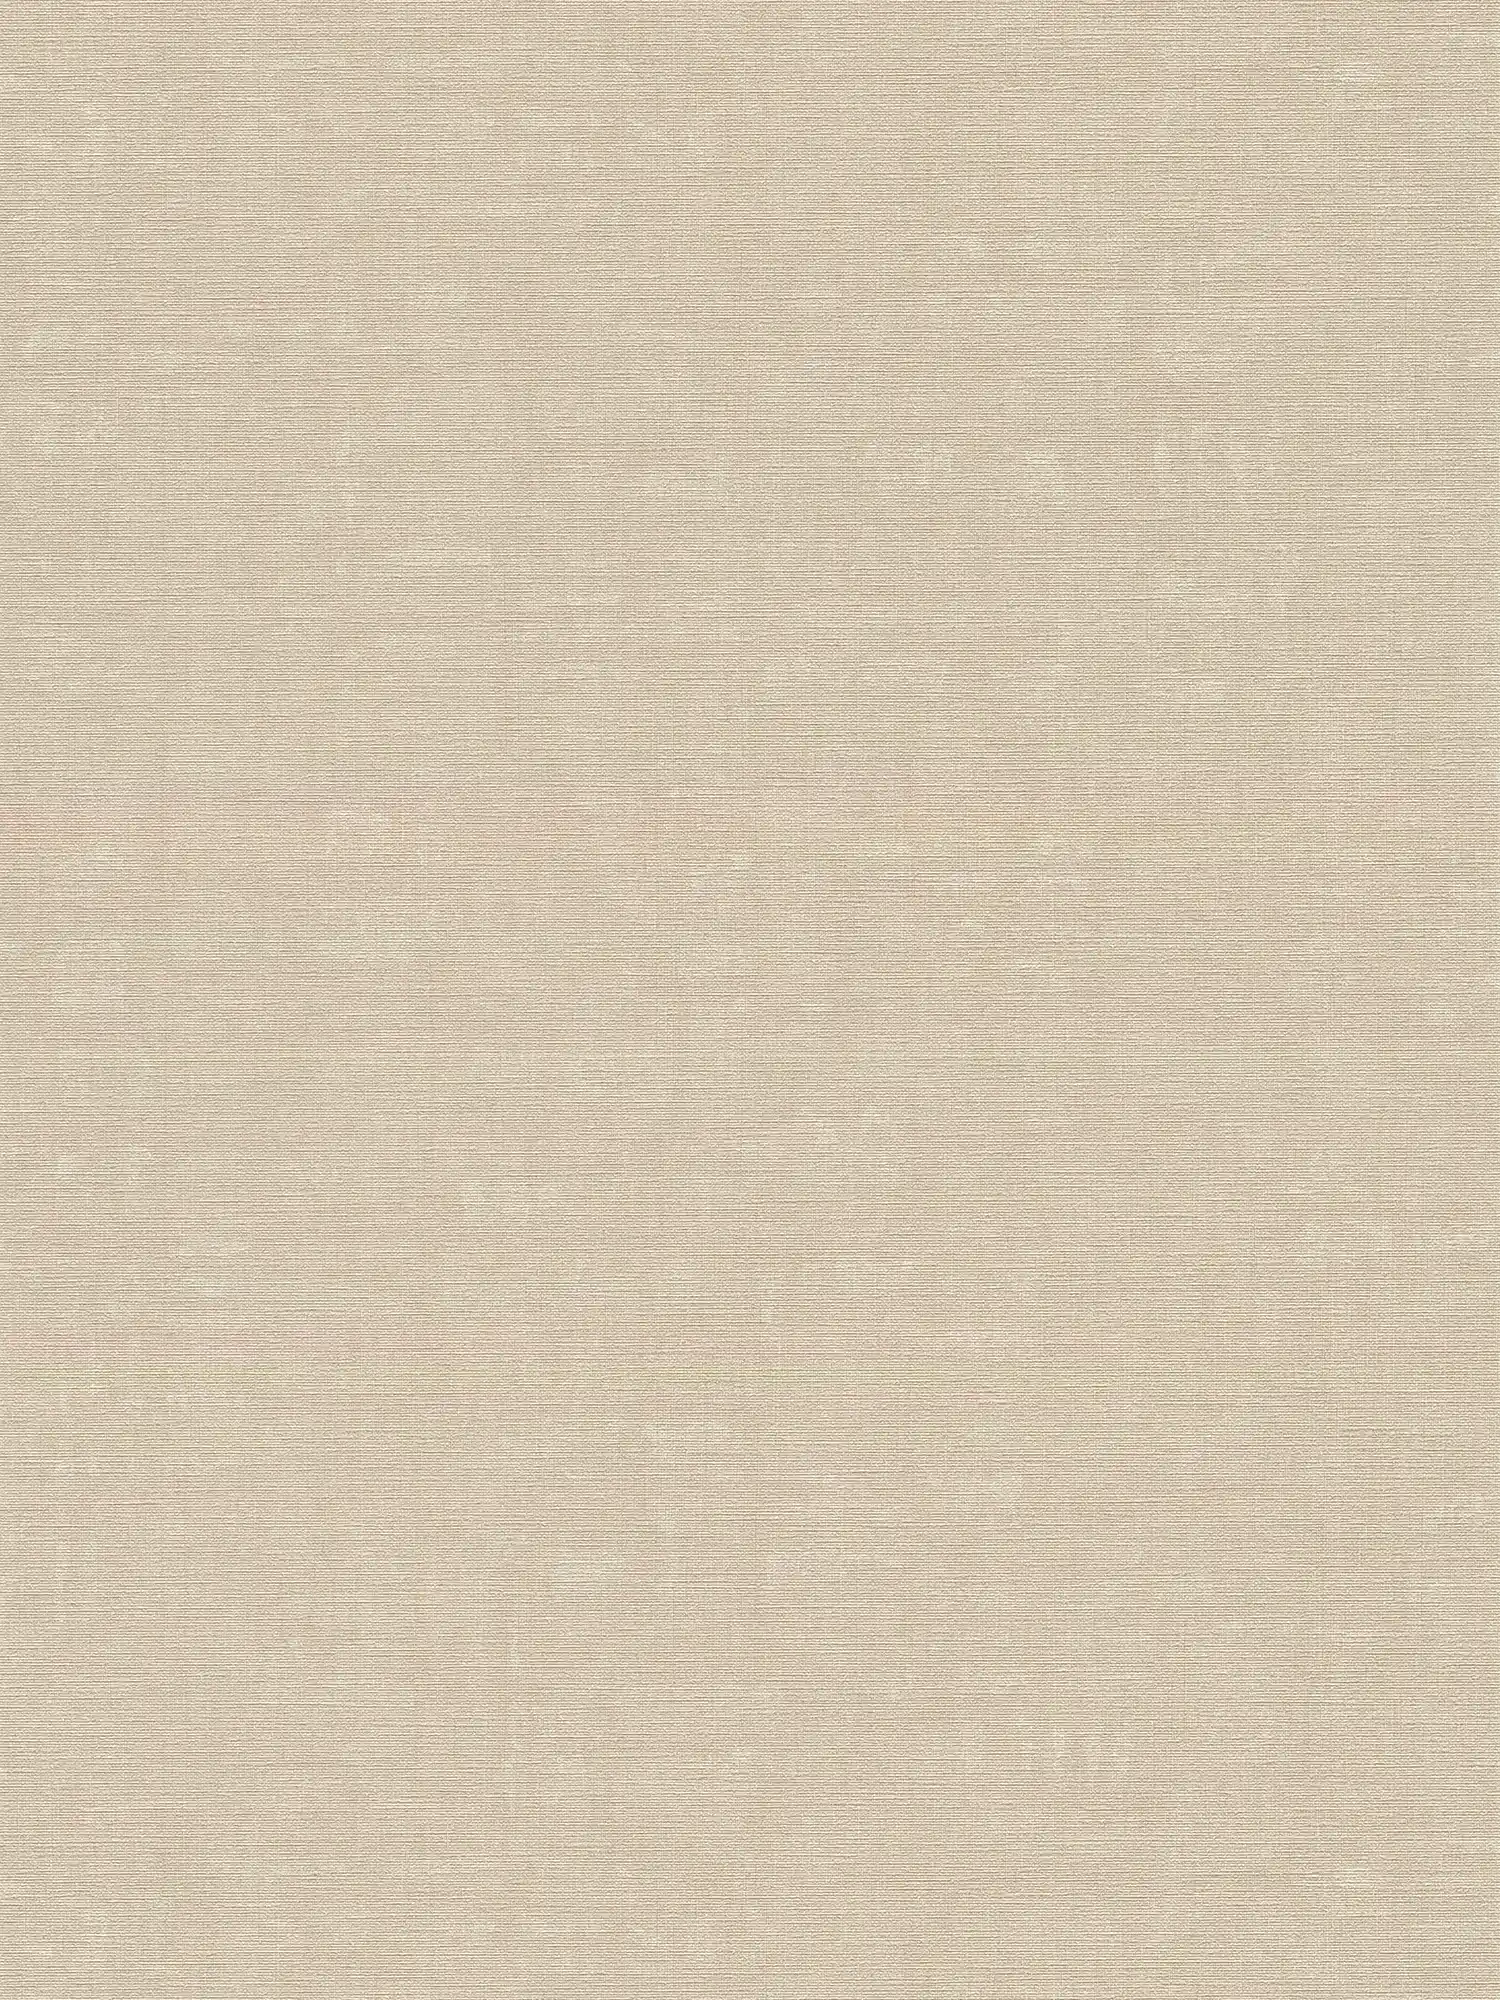 Papel pintado Melange liso con diseño de estructura - gris, beige
